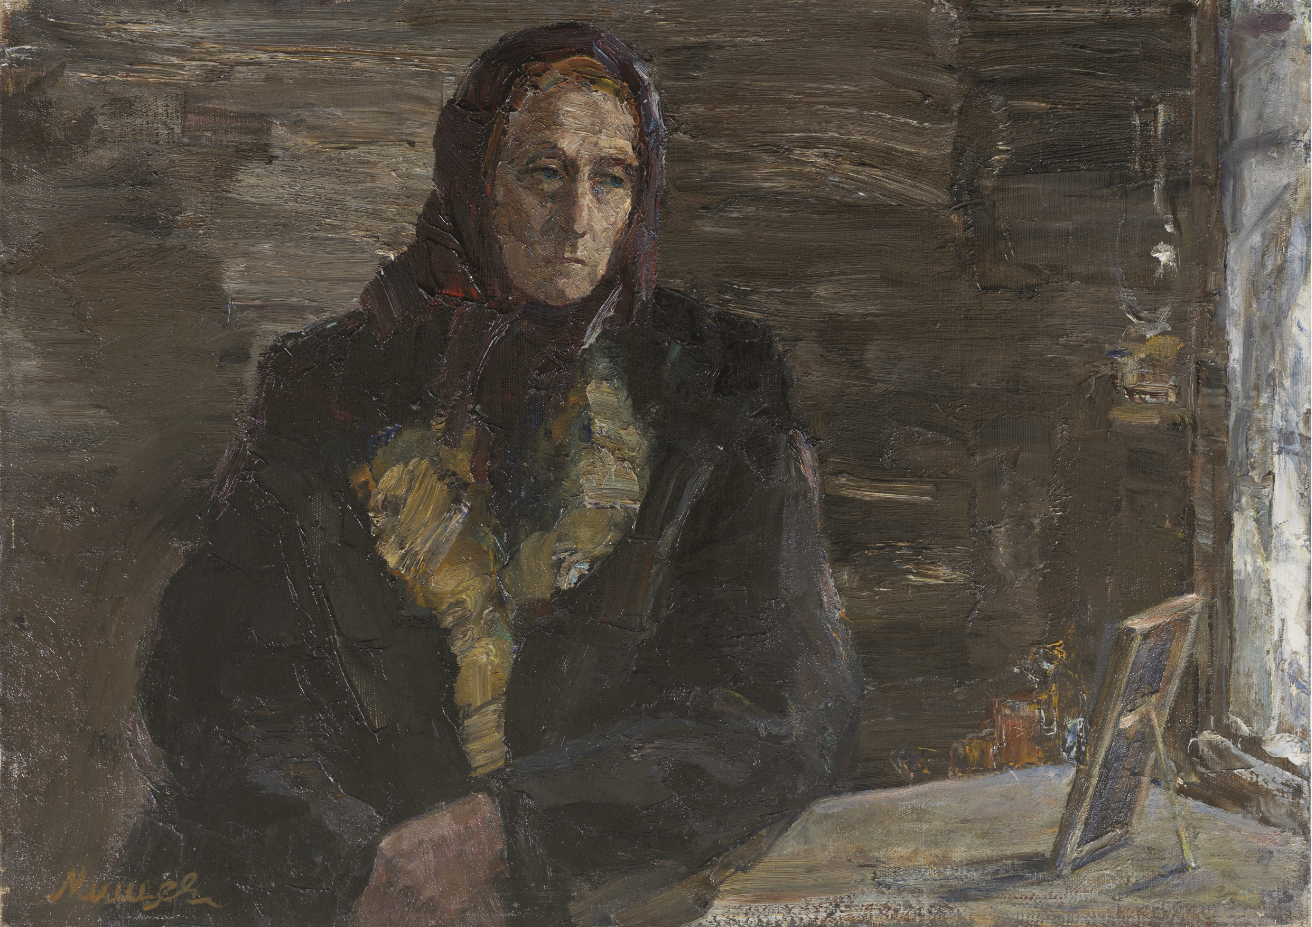 俄罗斯油画《列宁格勒被围困的日子》